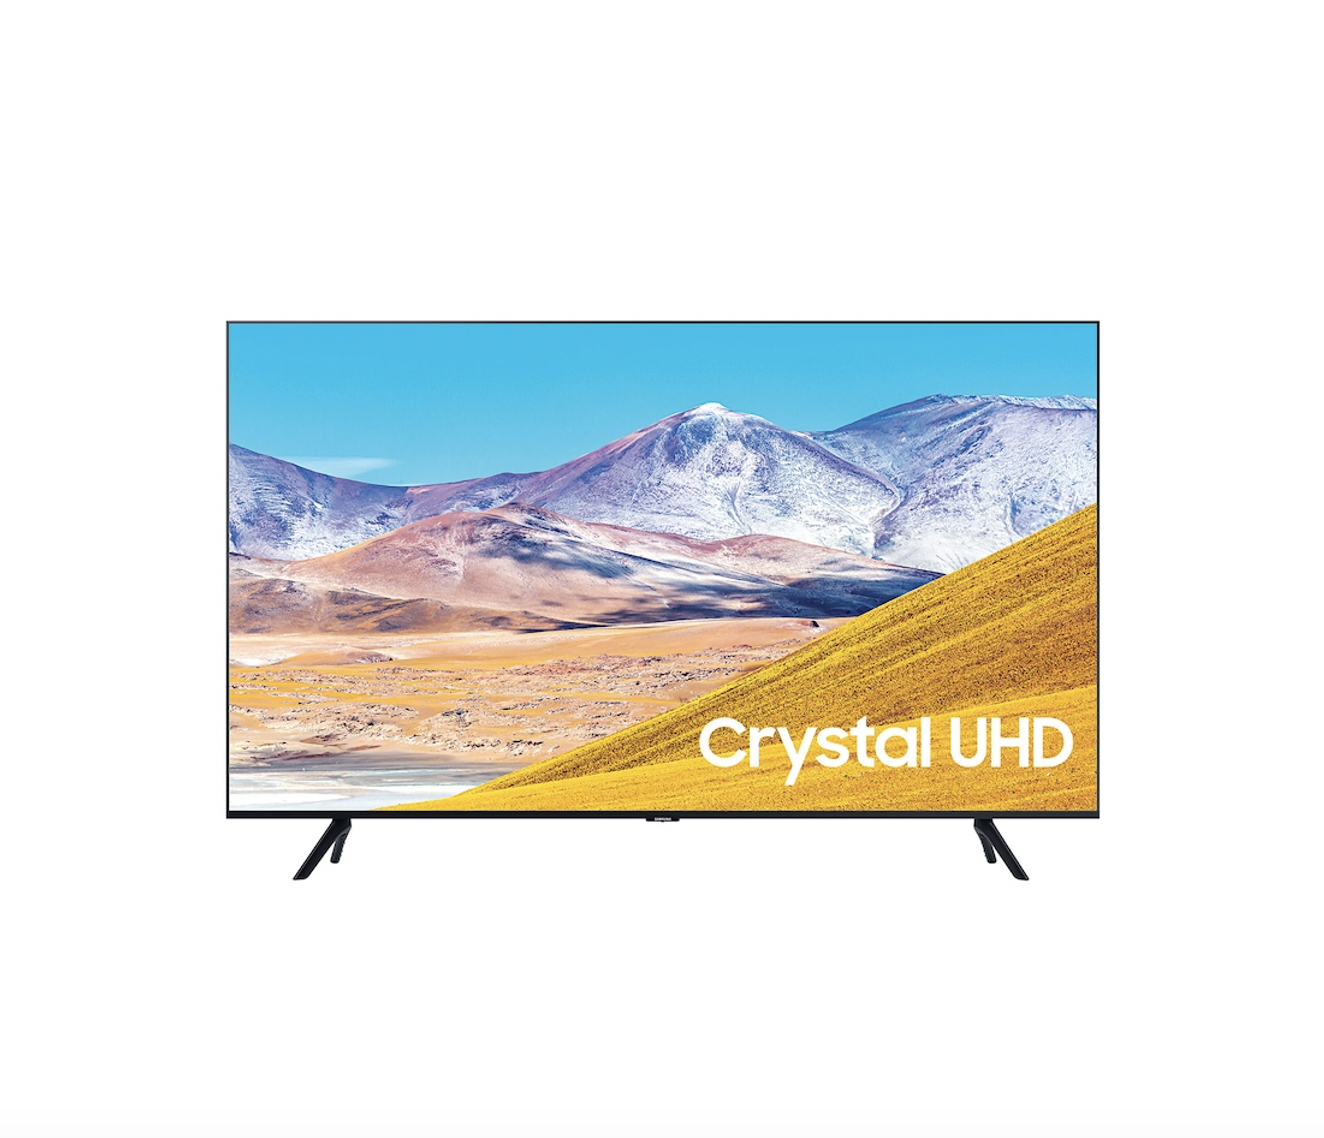 TU8000 Crystal UHD 4K Smart TV